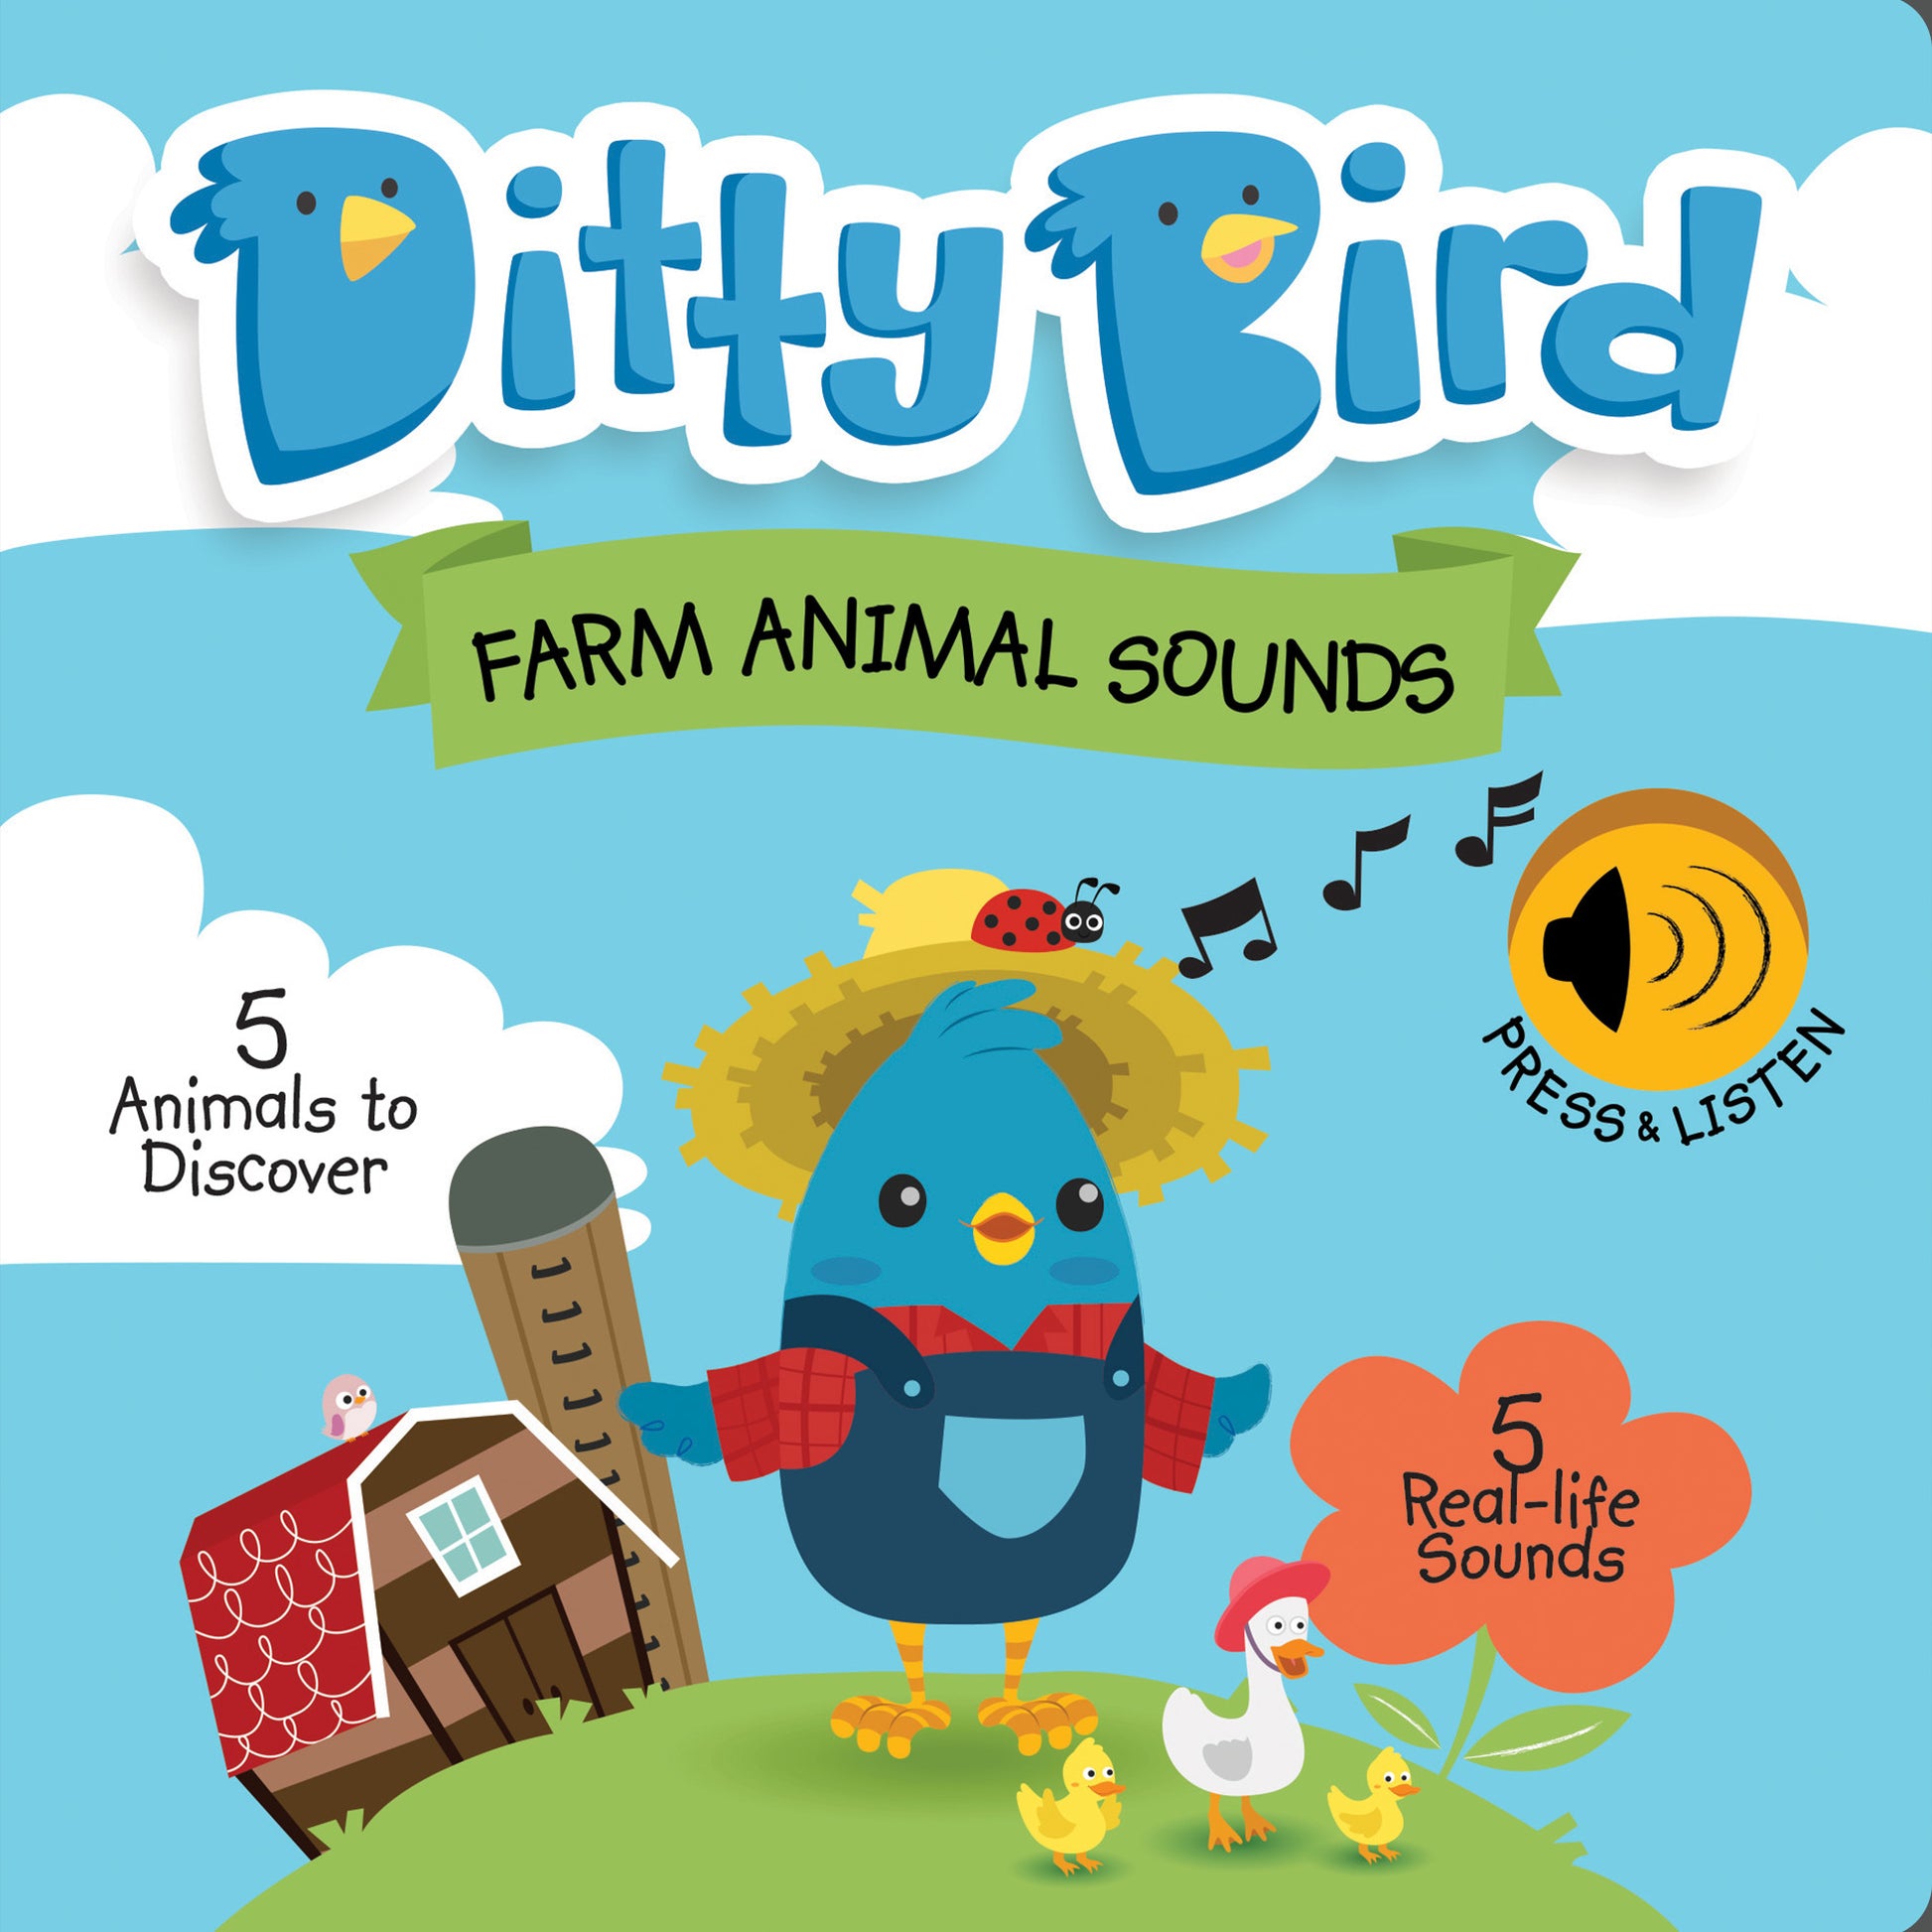 Ditty Bird Farm Animal Sounds Book